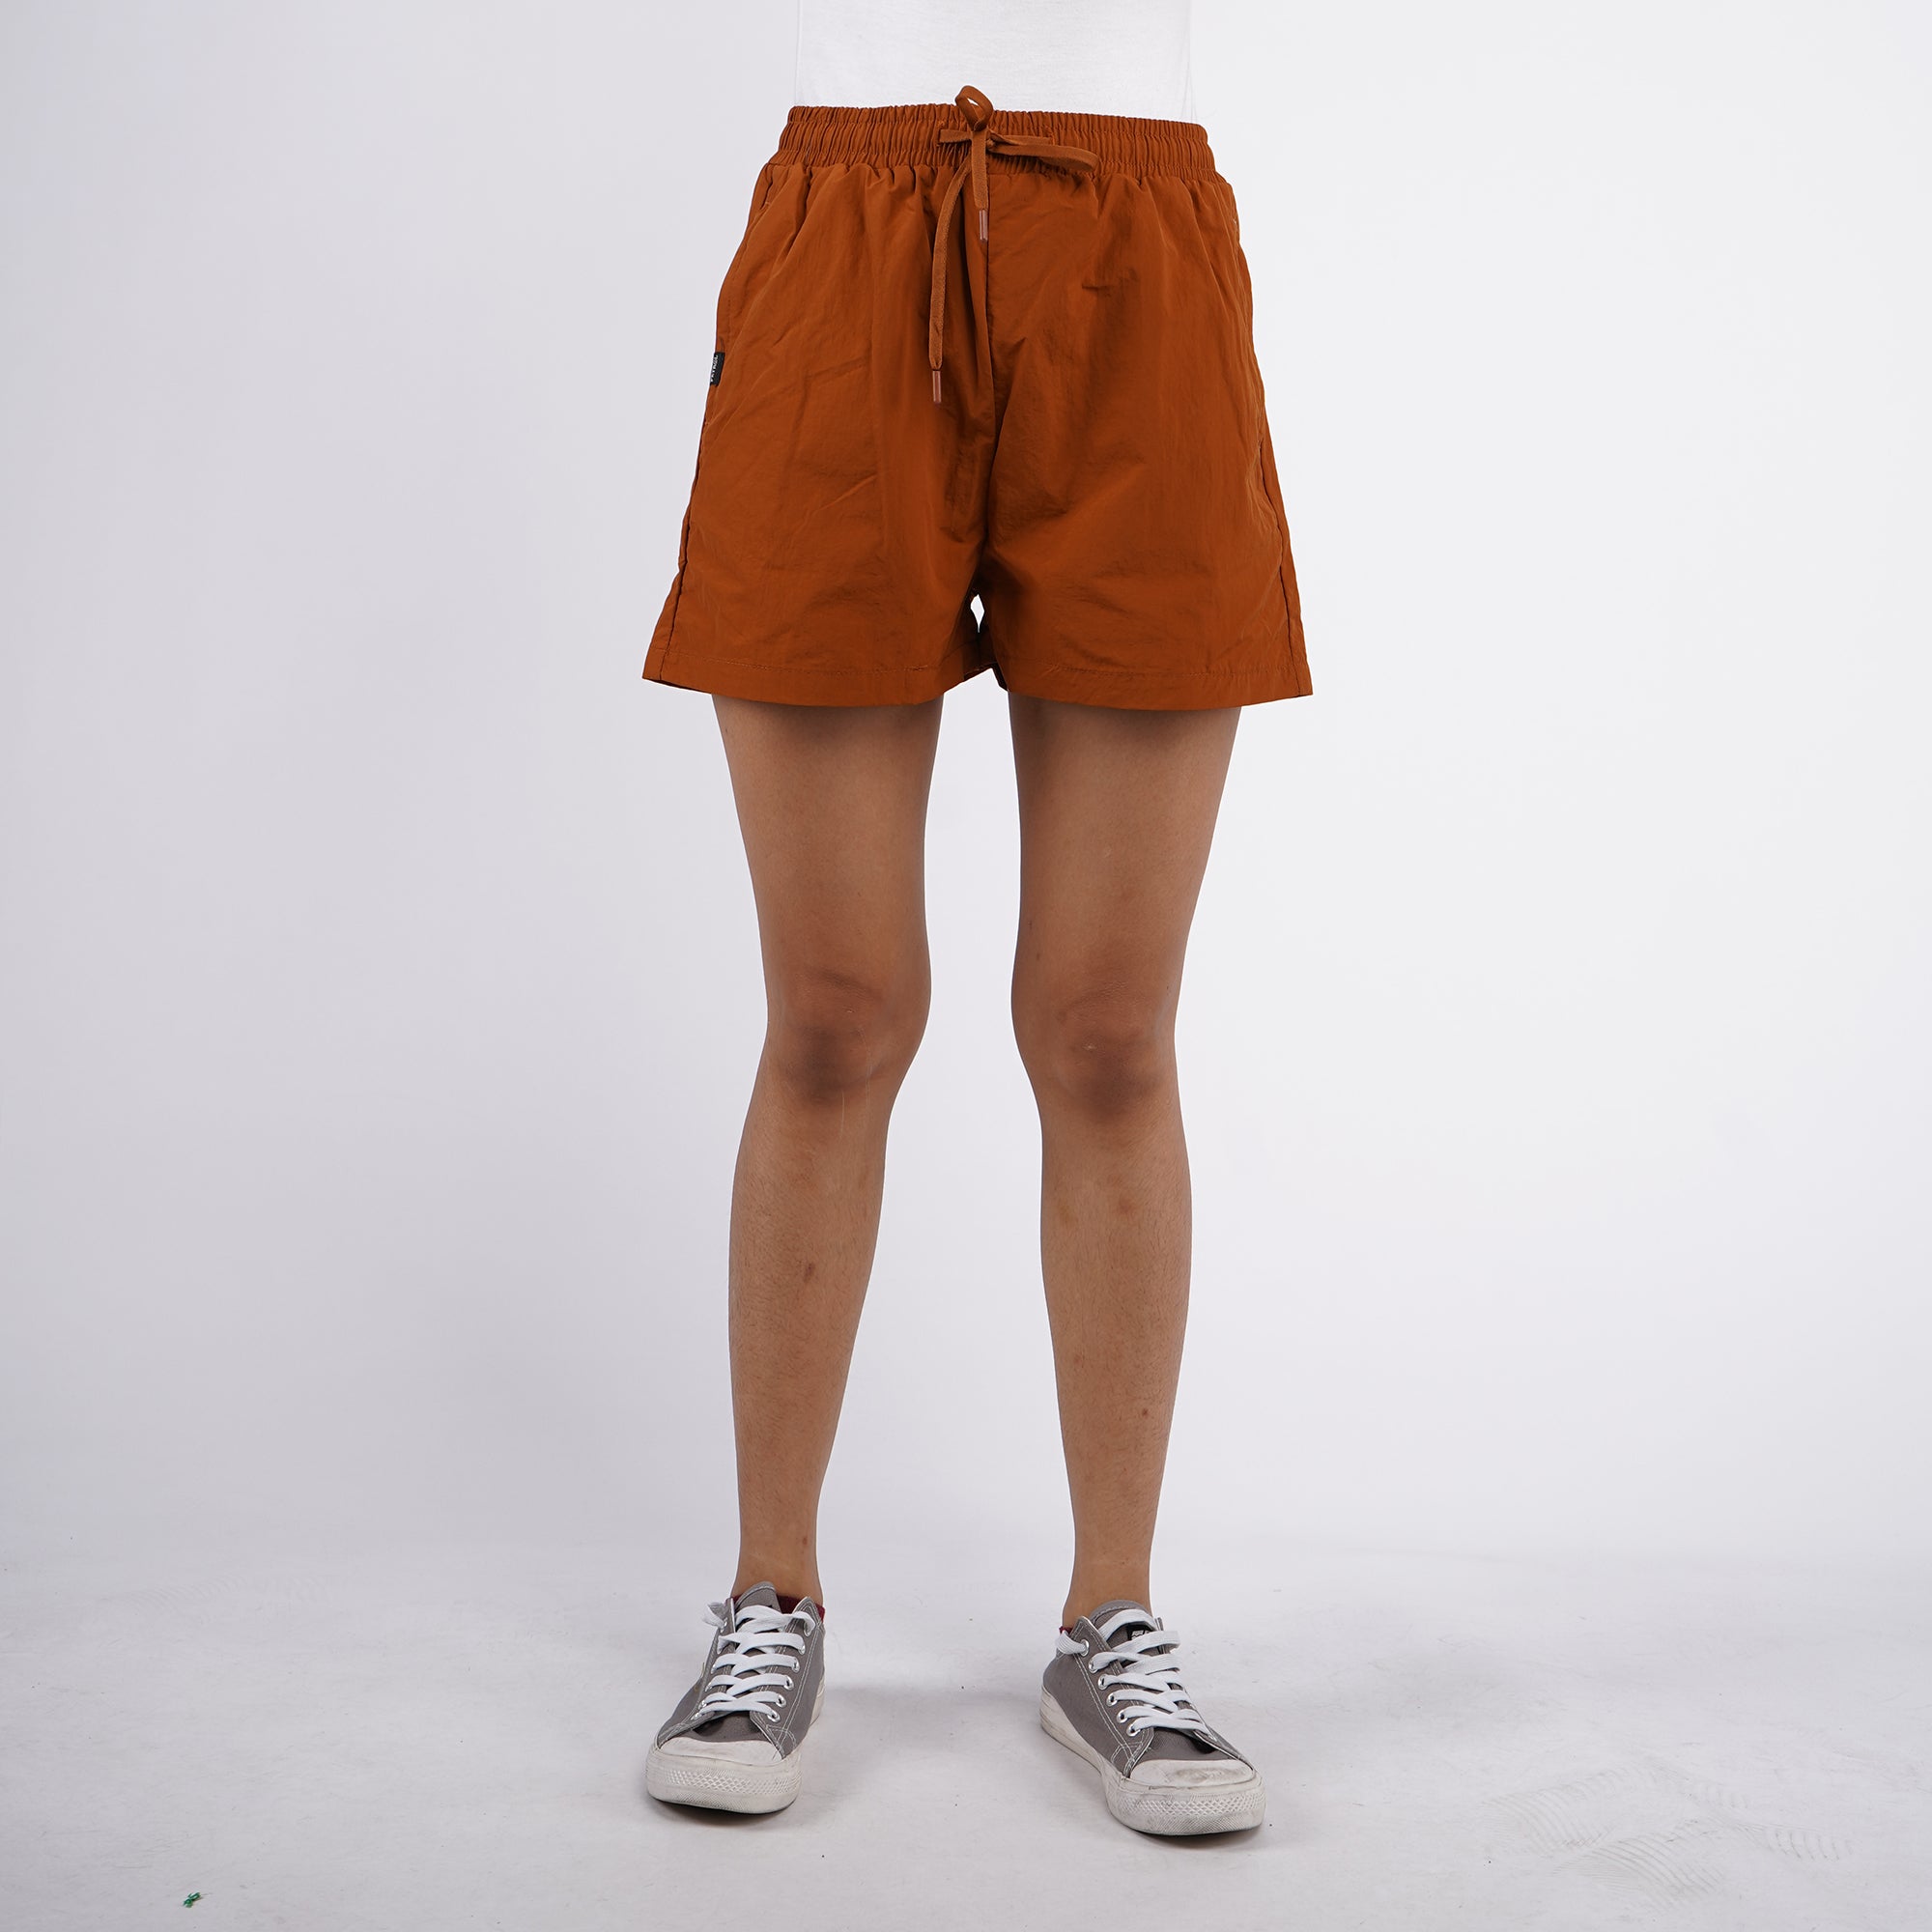 Buy Navy Blue Pyjamas & Shorts for Women by SHYLA Online | Ajio.com